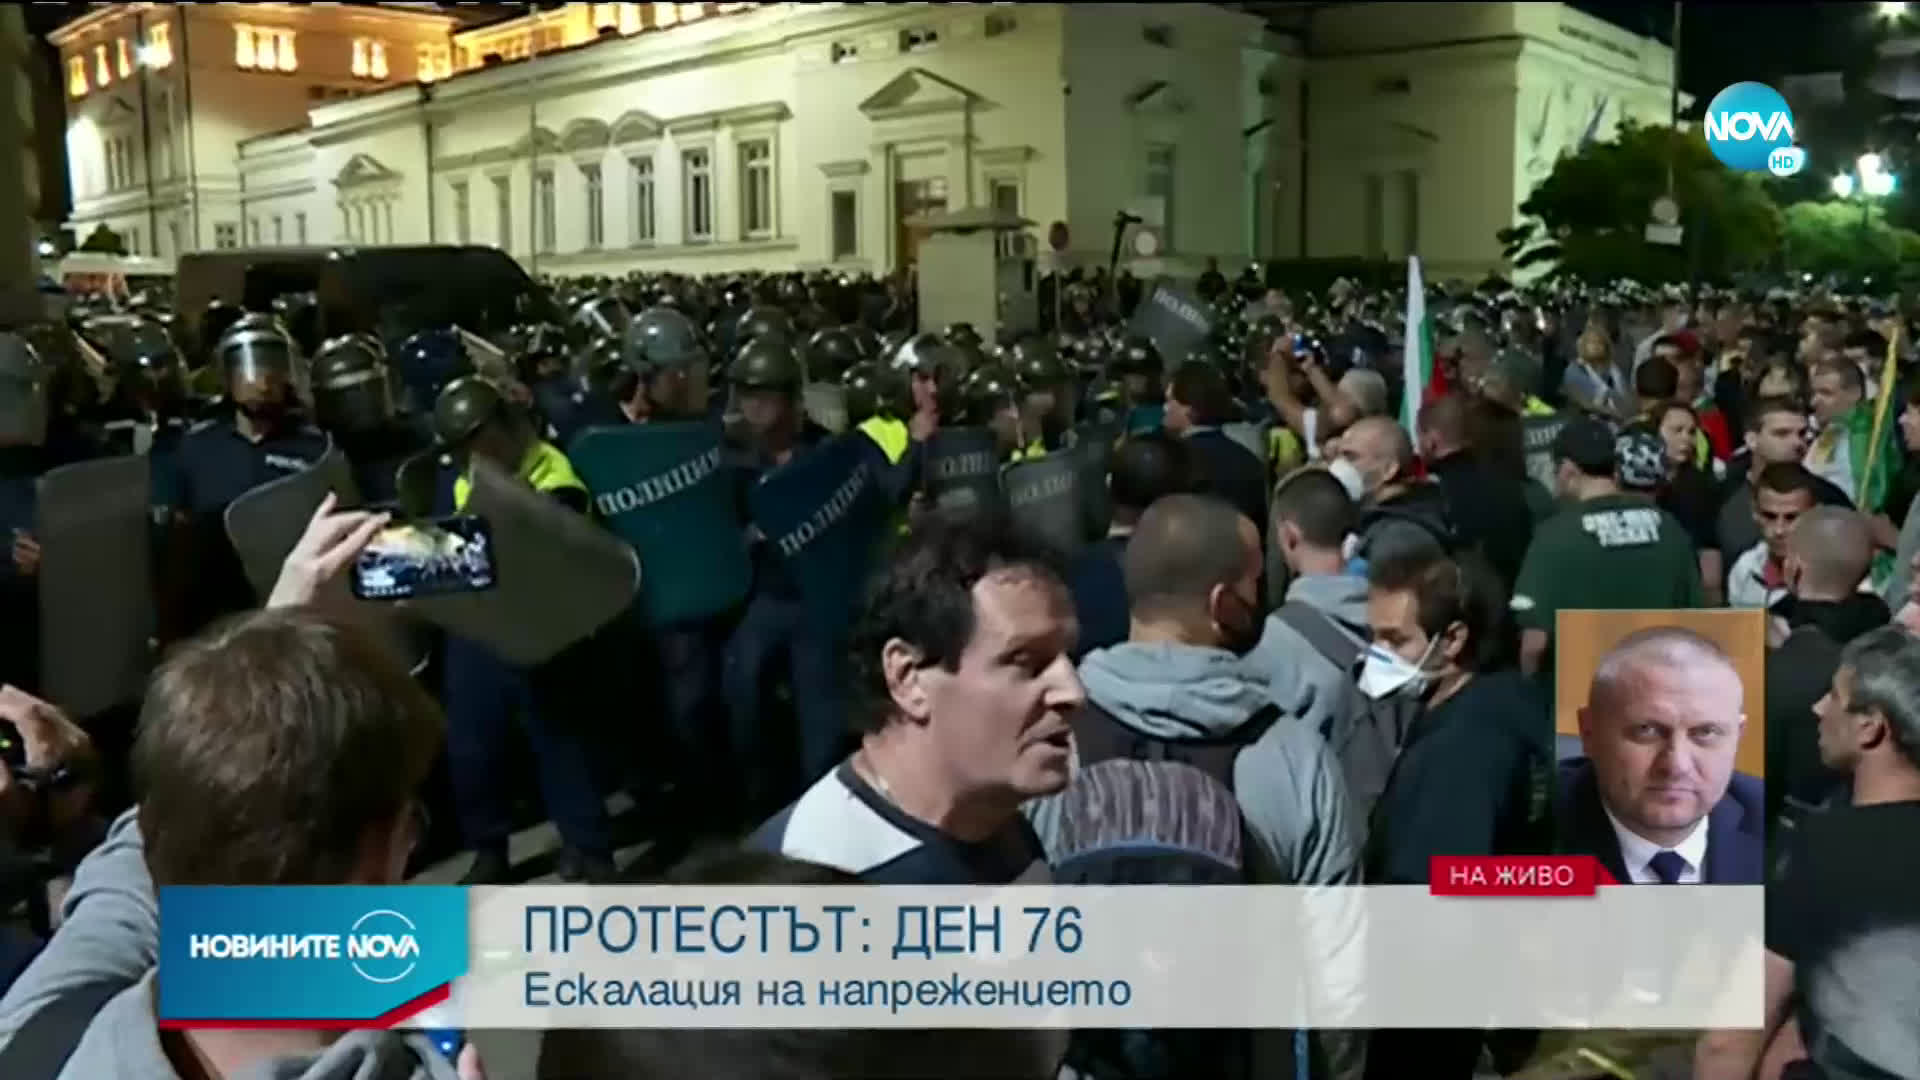 СДВР: Протестът на площад "Народно събрание" е нергламентиран